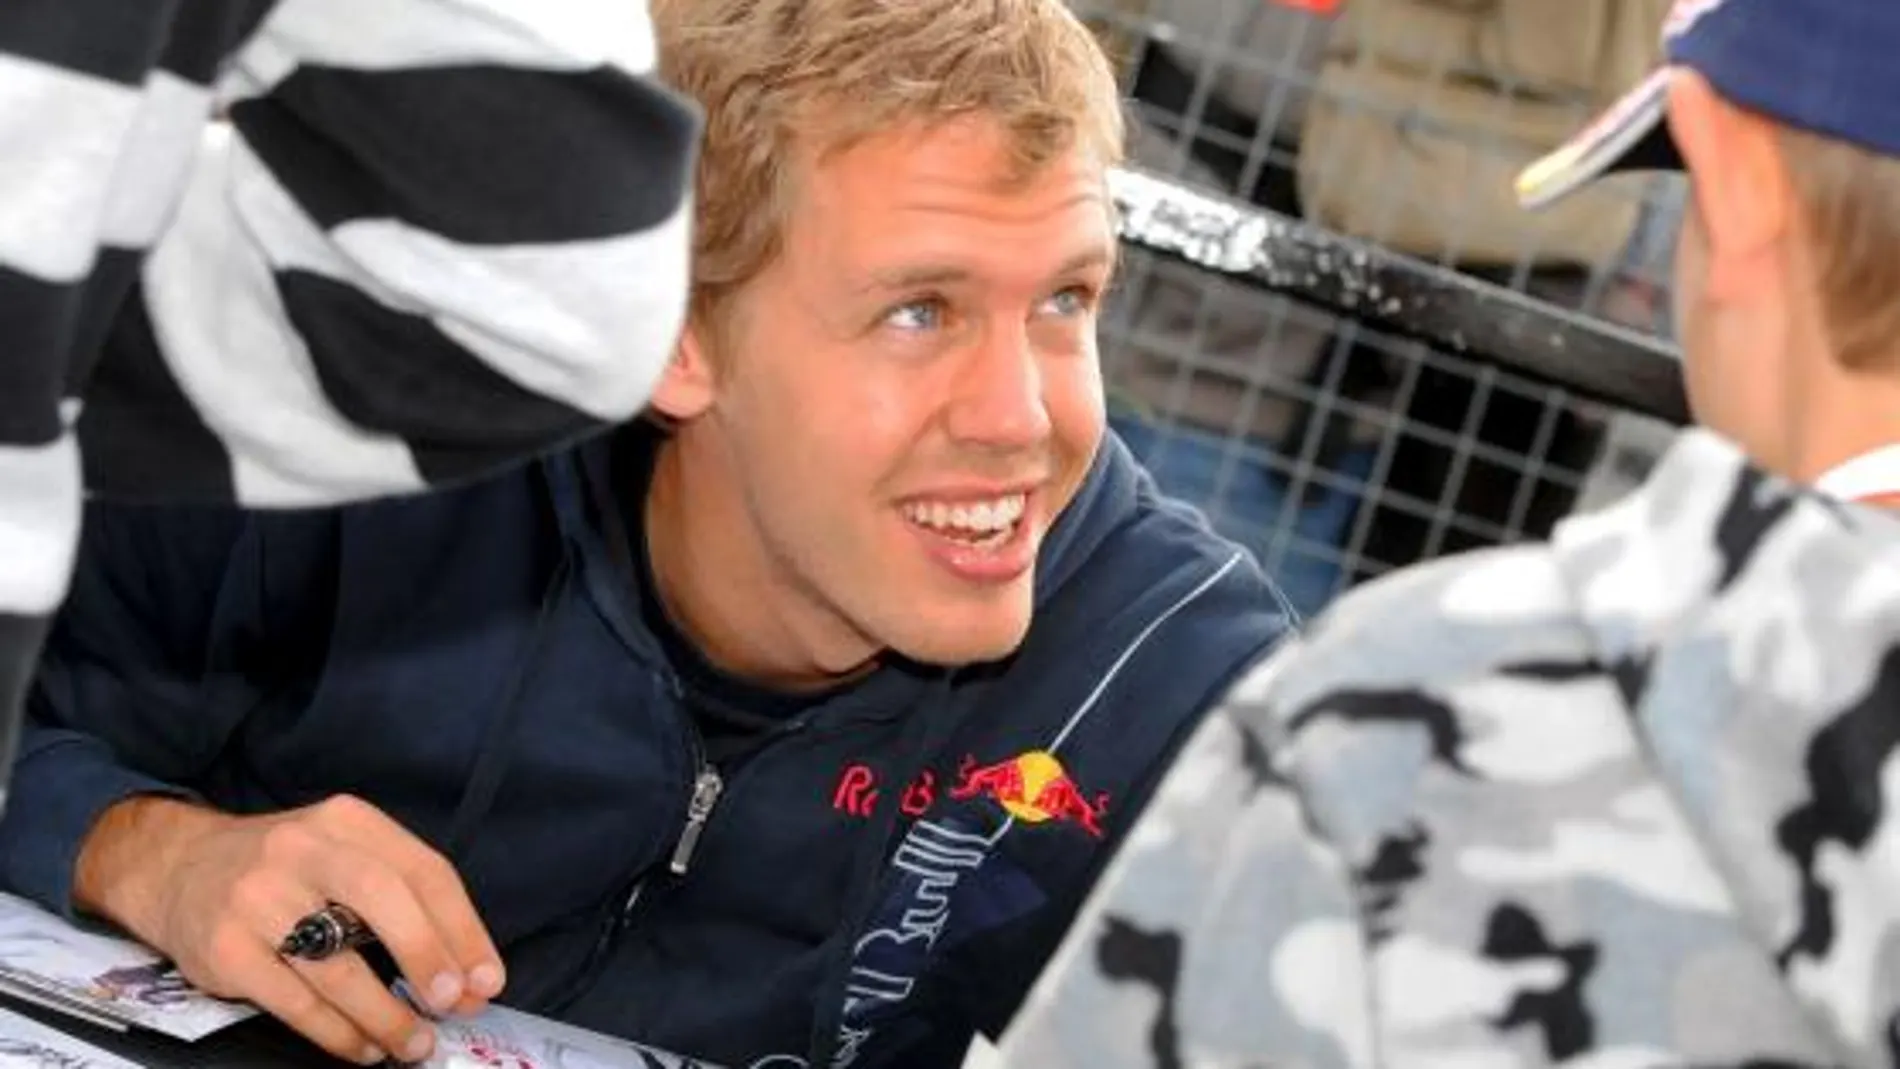 El piloto alemán Sebastian Vettel, de la escudería Red Bull, firma autógrafos después de la sesión de clasificación del Gran Premio de Gran Bretaña de Fórmula Uno